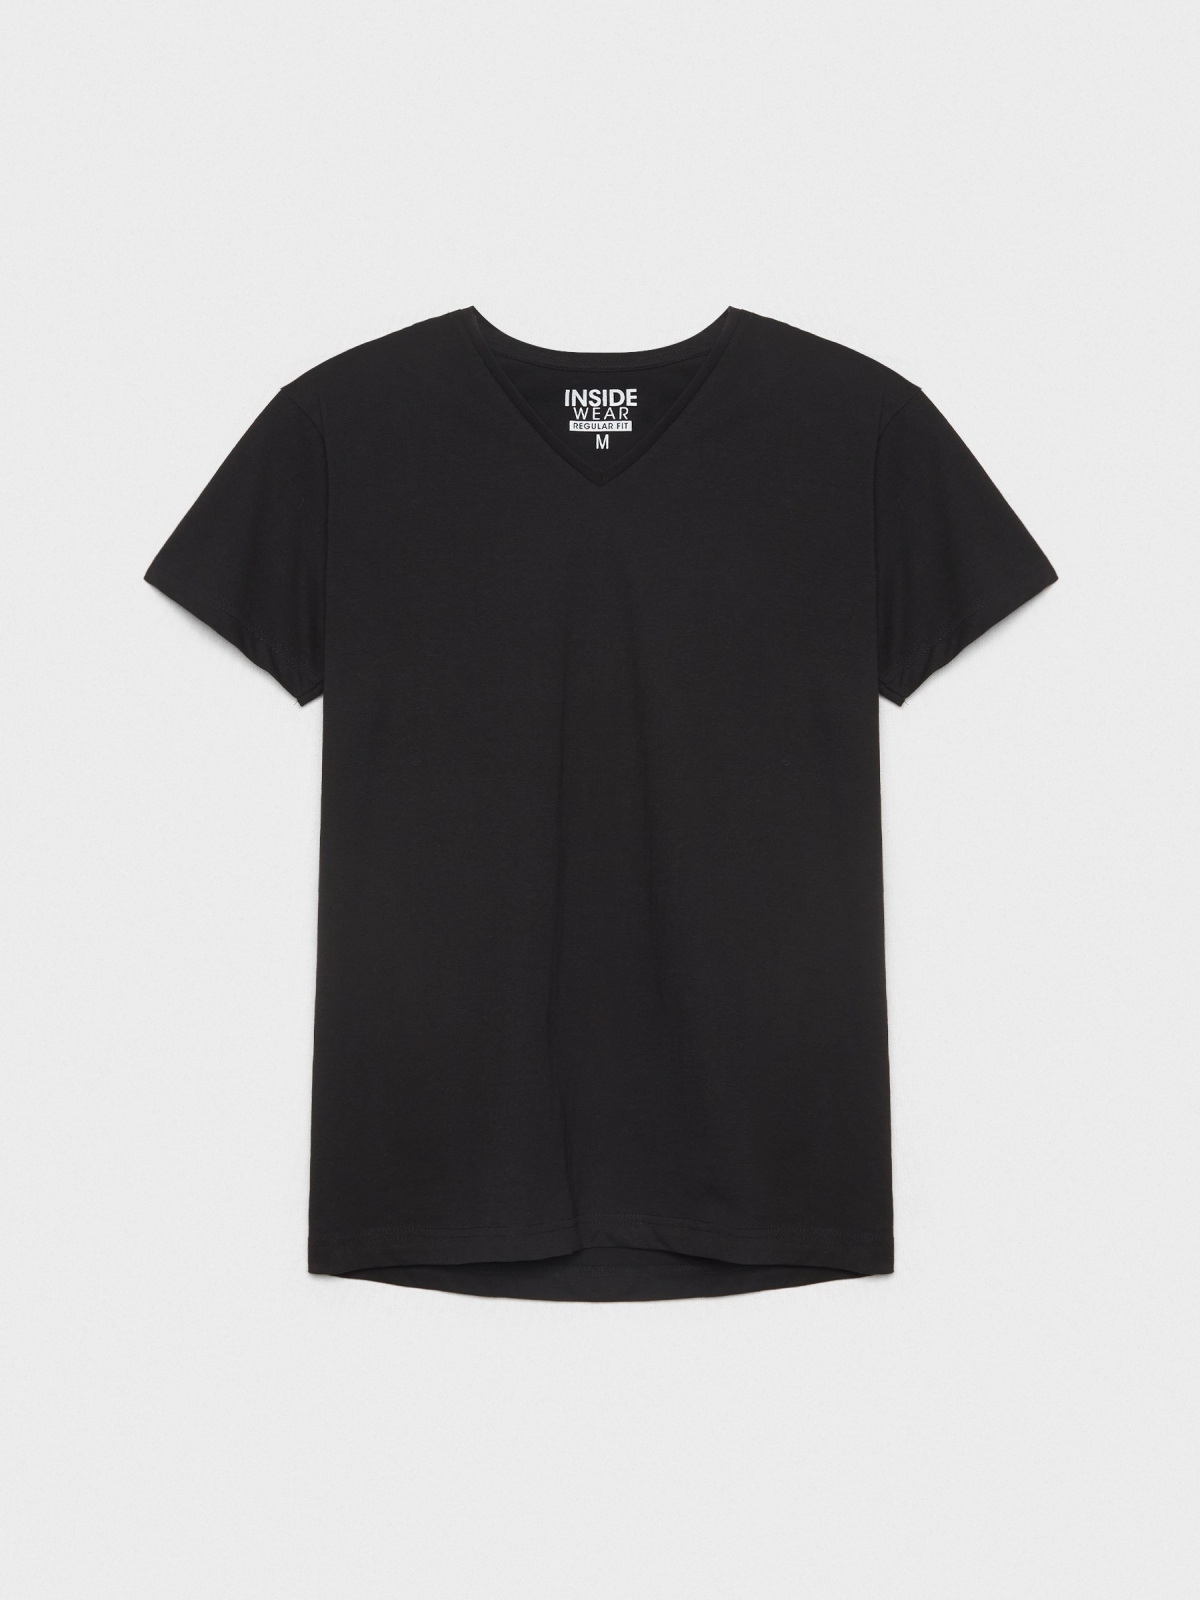  Basic V-neck T-shirt black